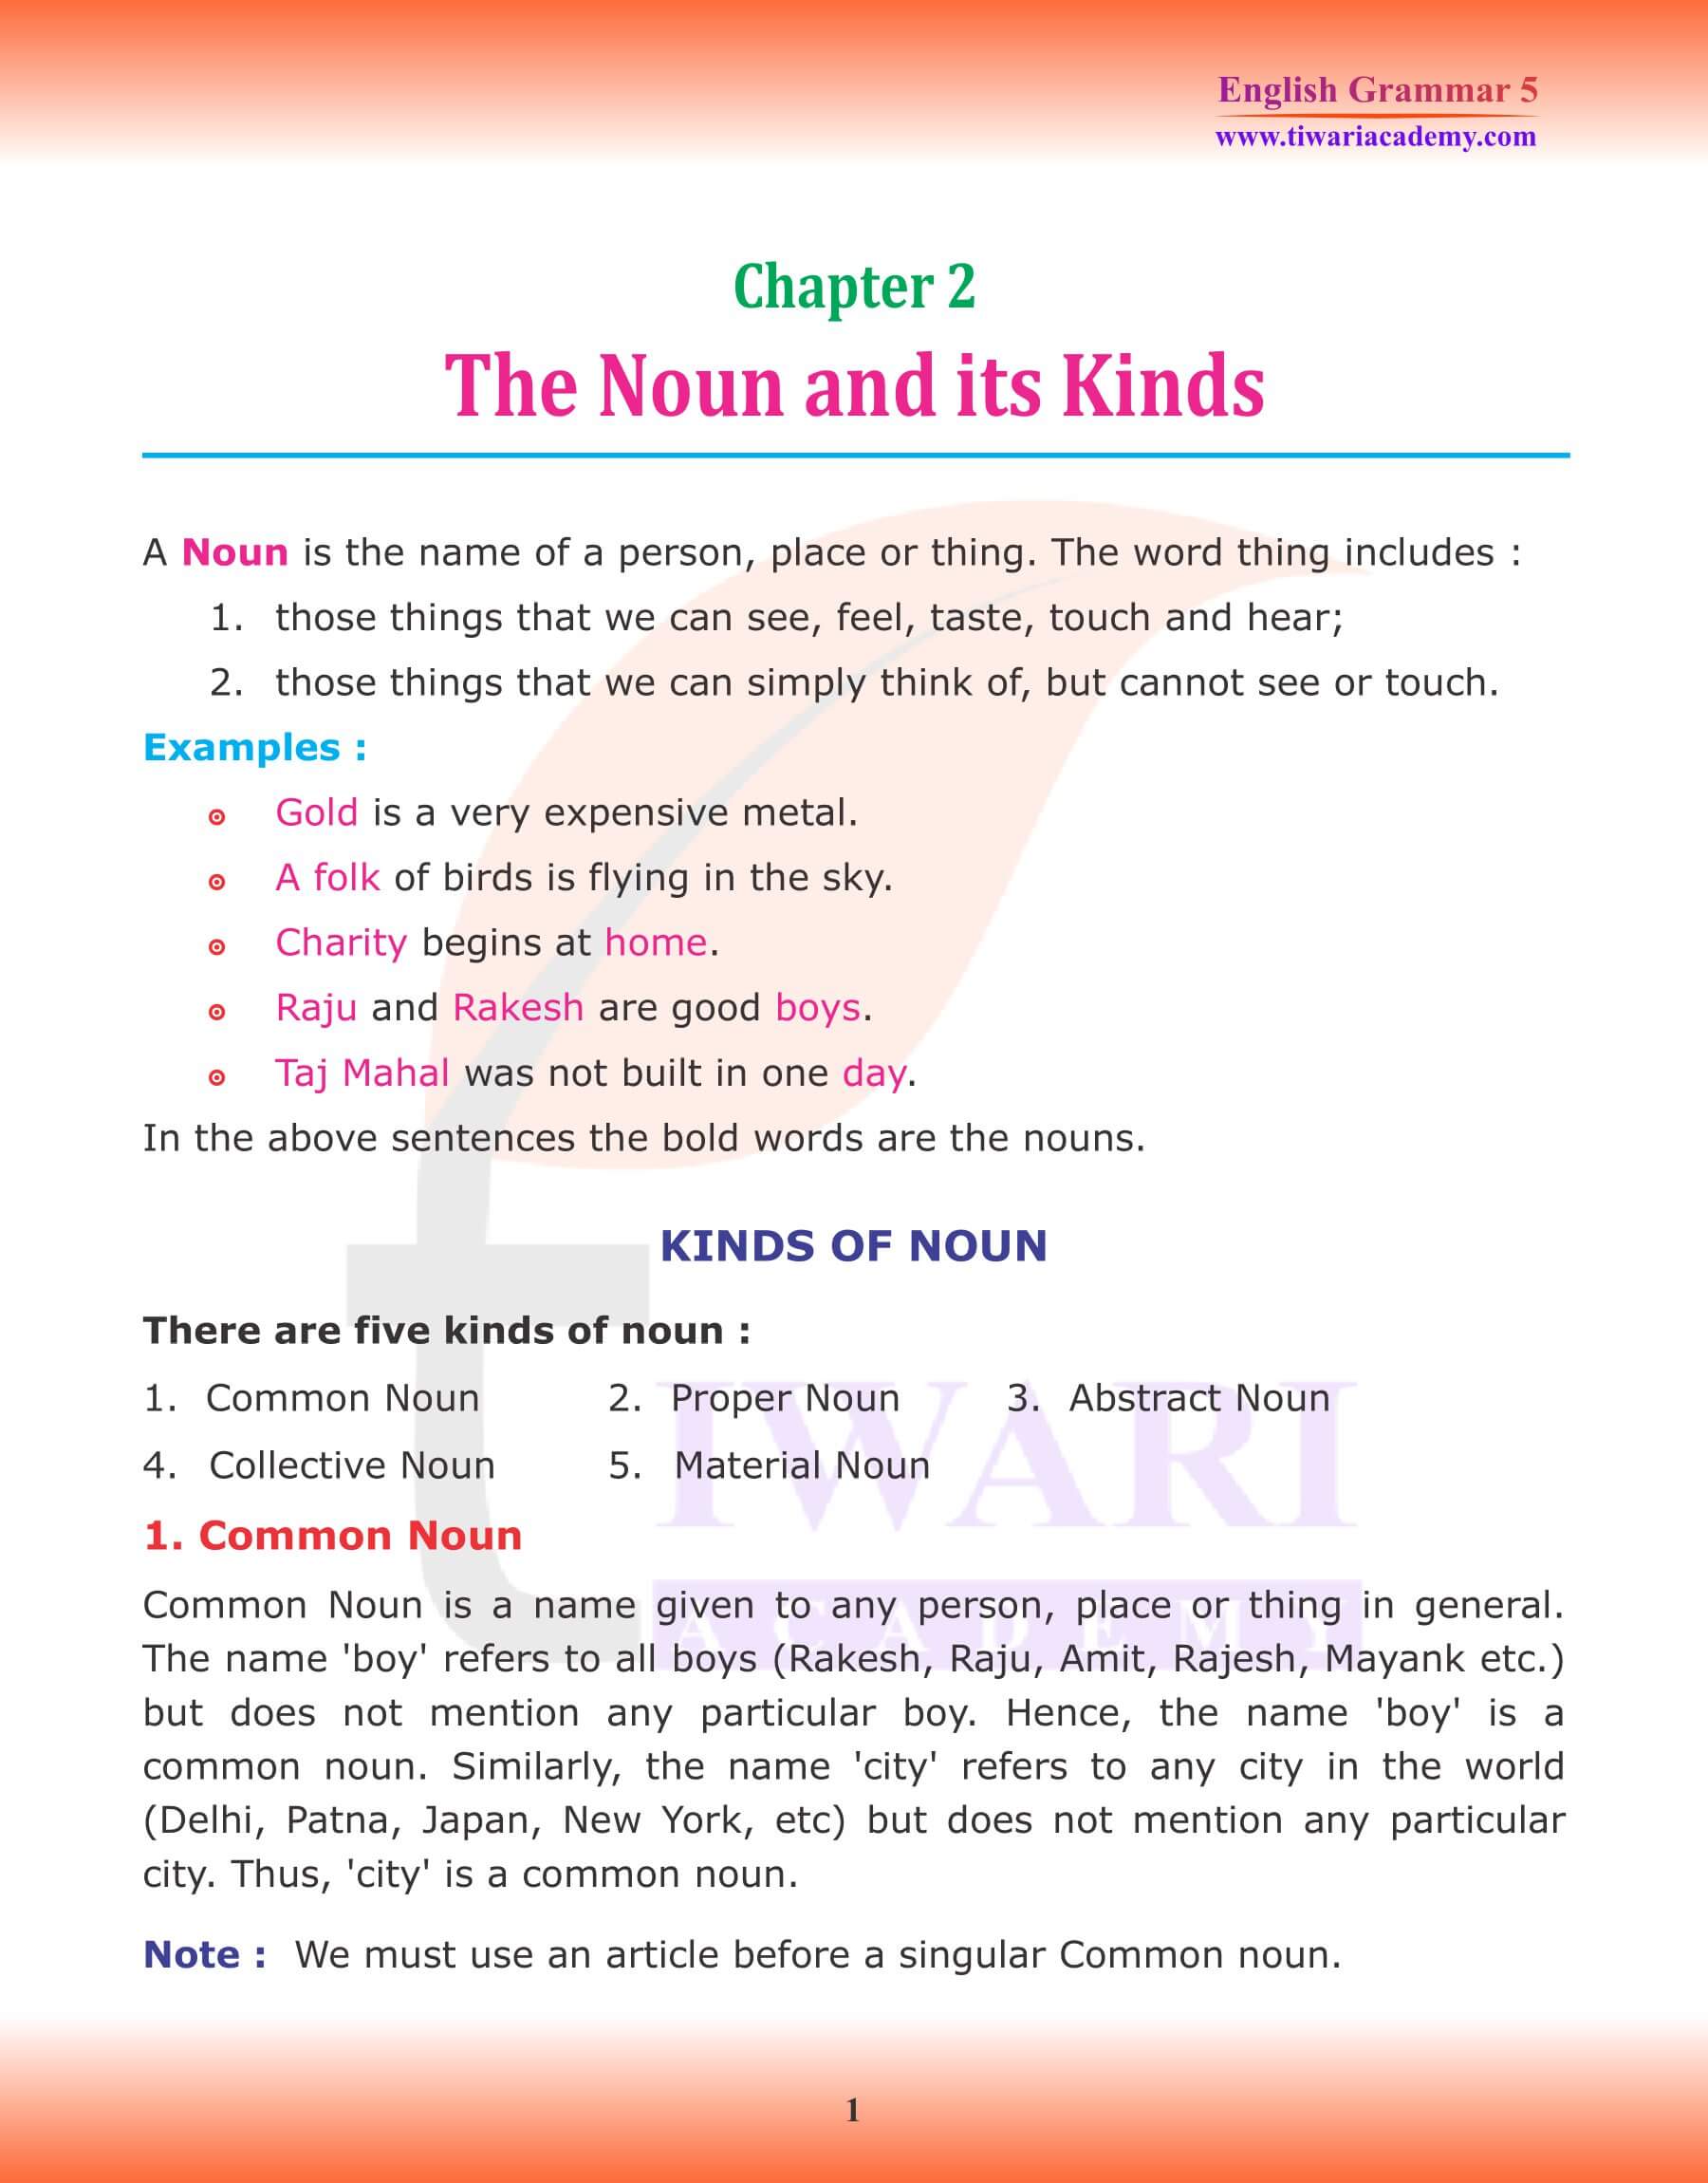 Class 5 English Grammar Chapter 2 The Noun